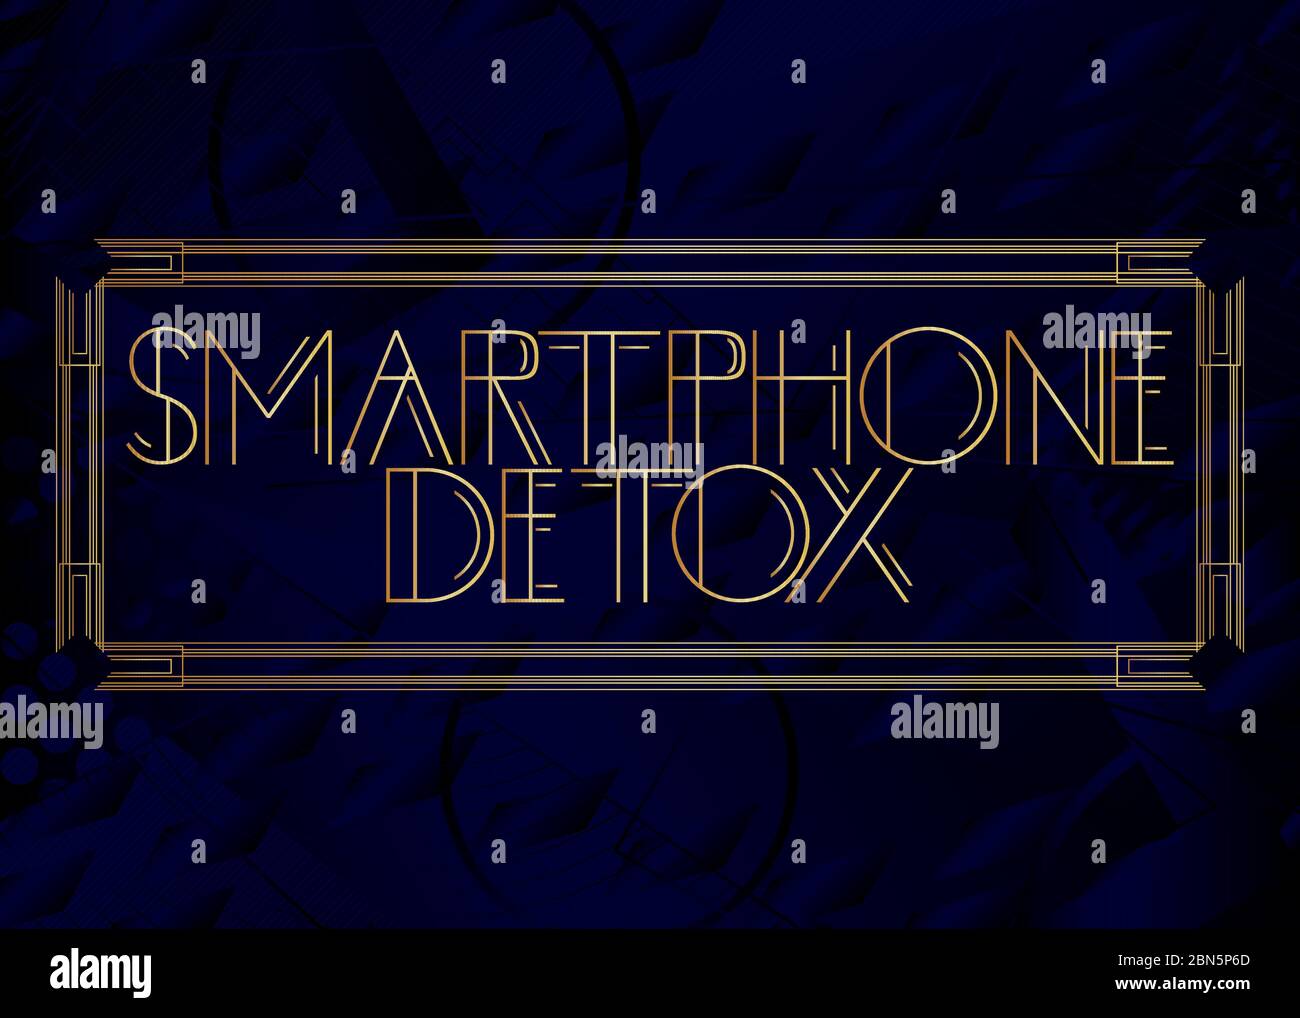 Testo in stile Art Deco per smartphone Detox. Biglietto di auguri decorativo, cartello con lettere d'epoca. Illustrazione Vettoriale